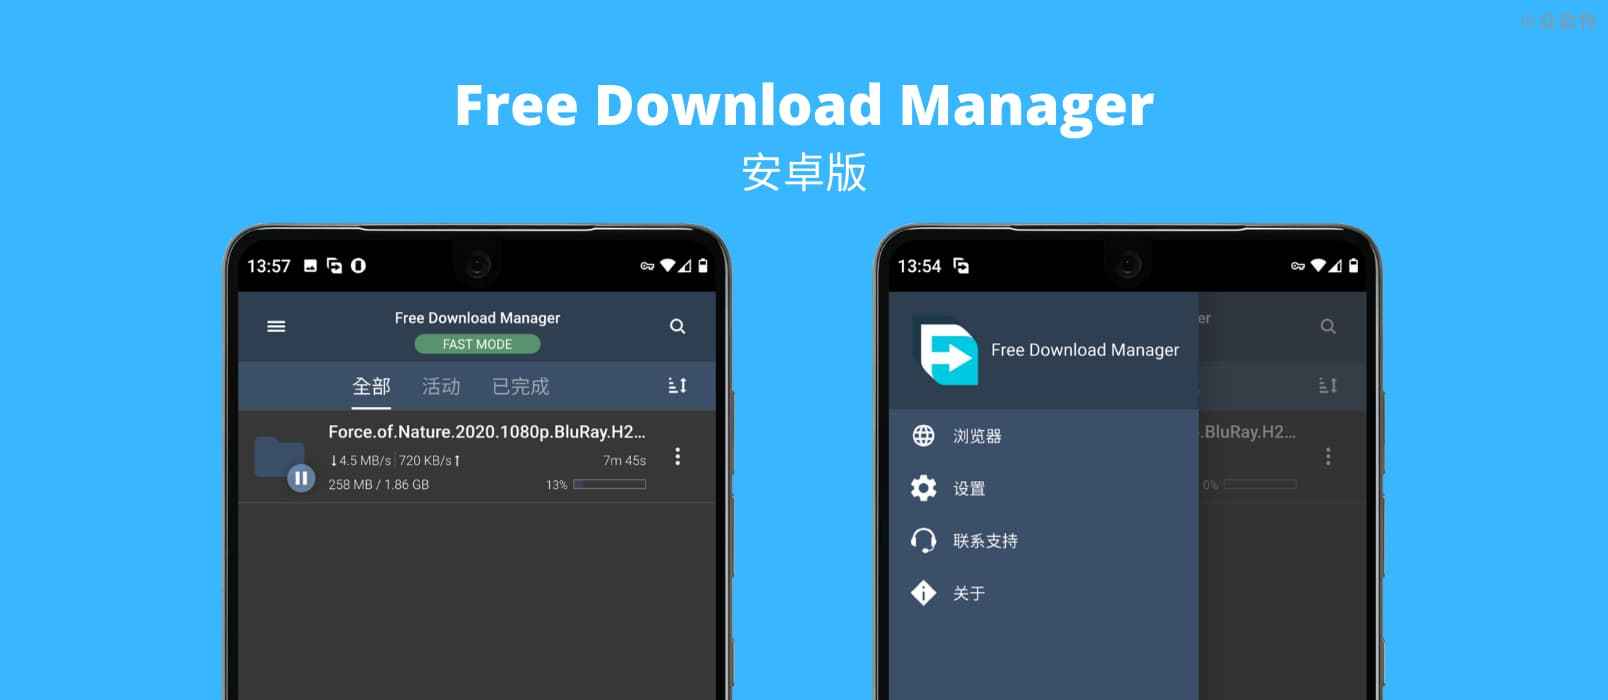 支持 BT 下载的 Free Download Manager 安卓版